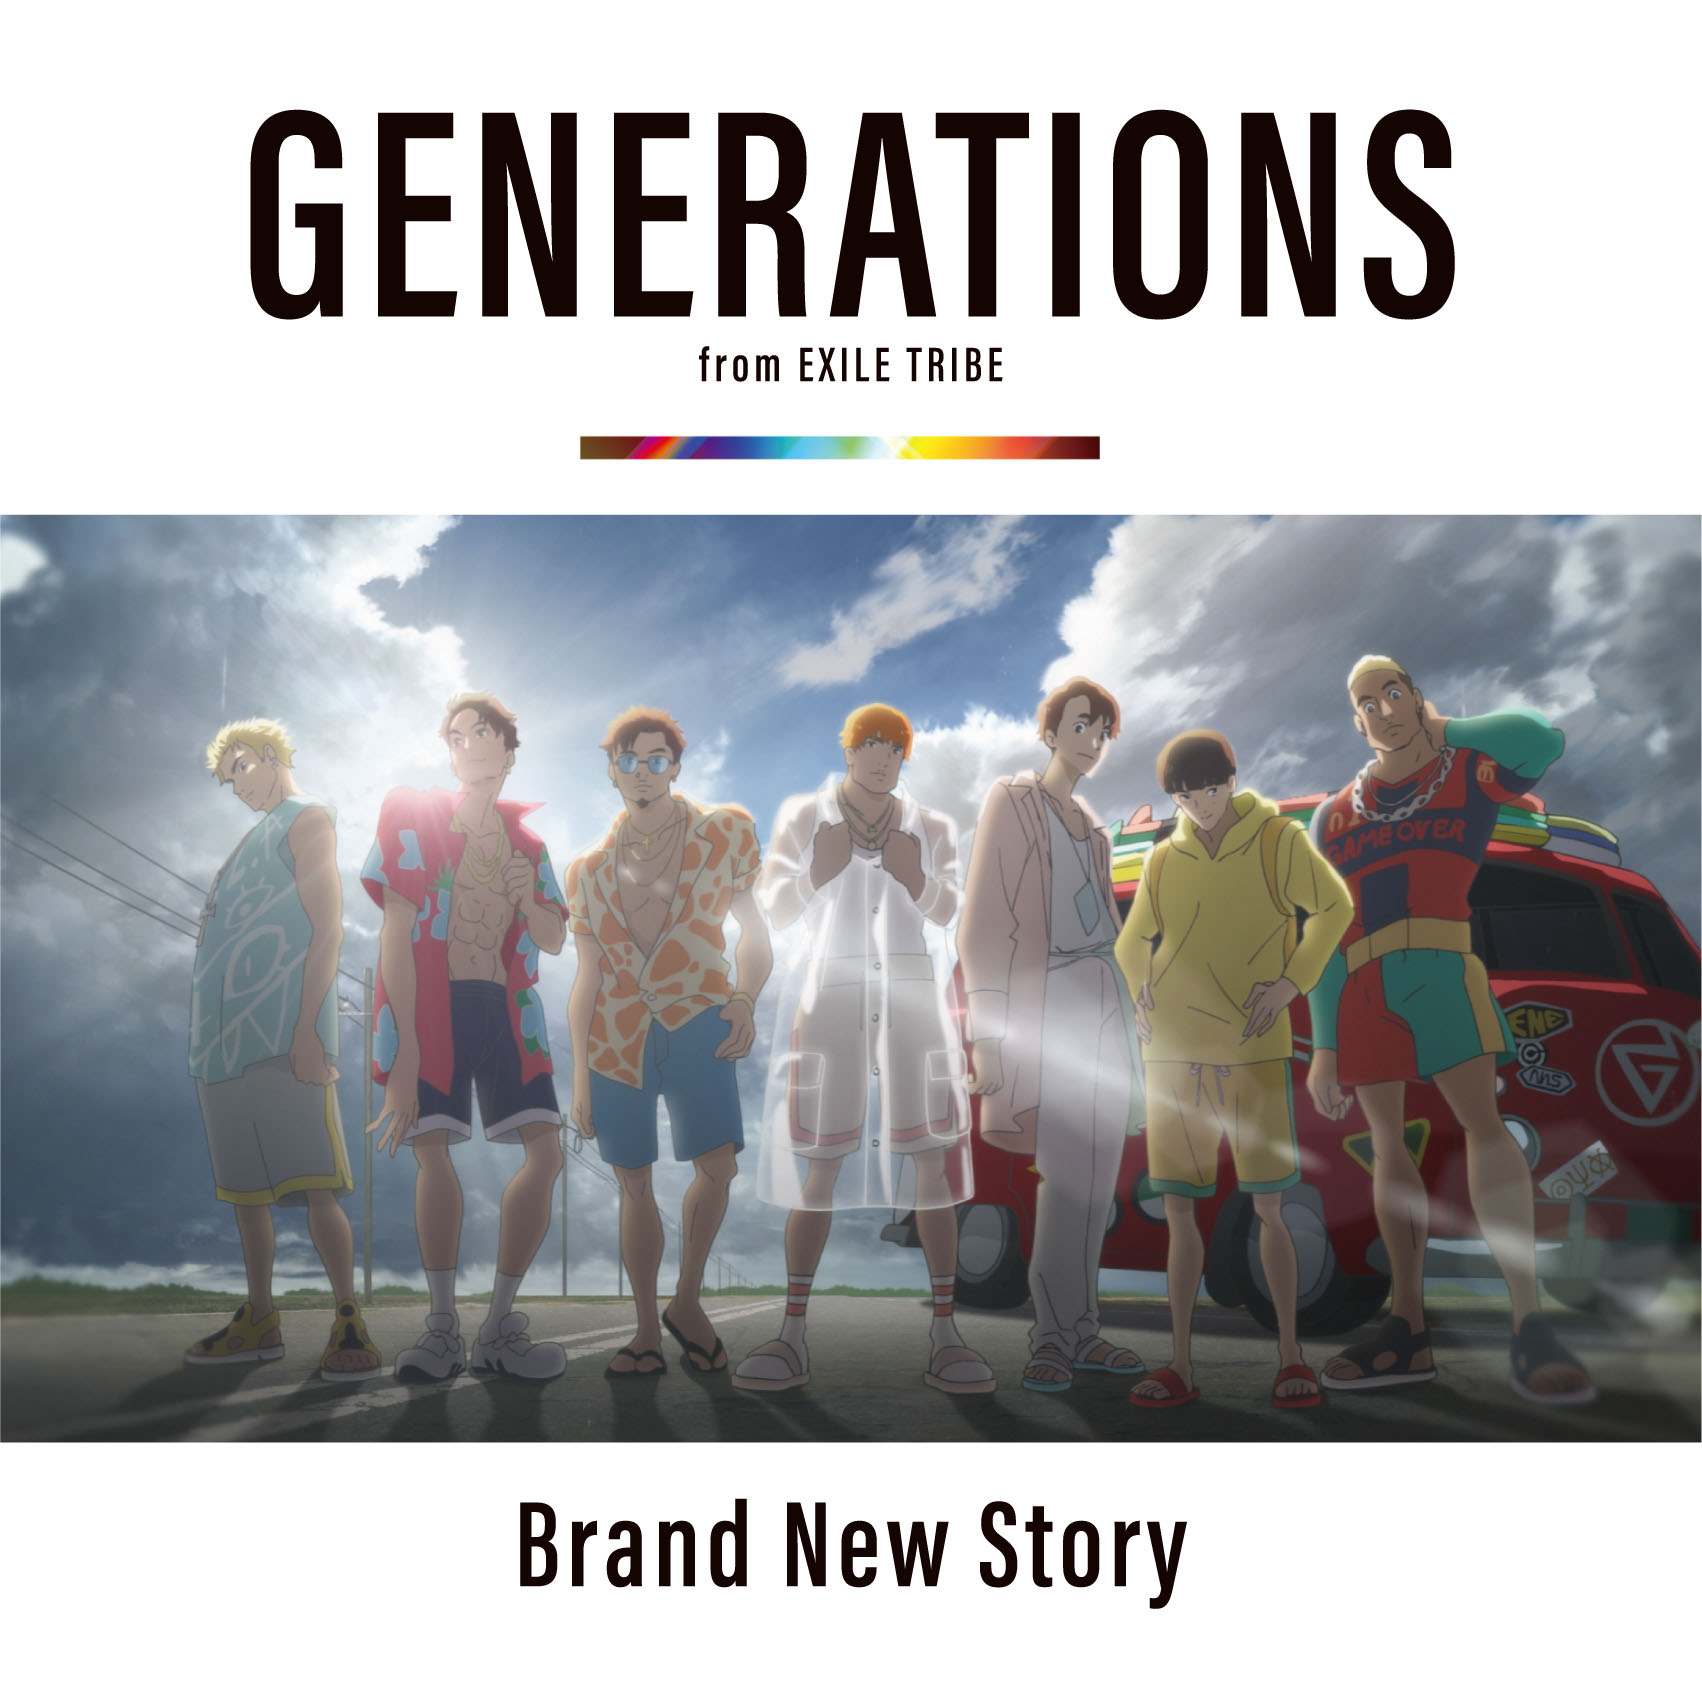 劇場版 きみと 波にのれたら 主題歌 Brand New Story 初回生産限定盤 Dvd付 Generations From Exile Tribe Wav Cue Bk Tif Iso 深雪动漫分享